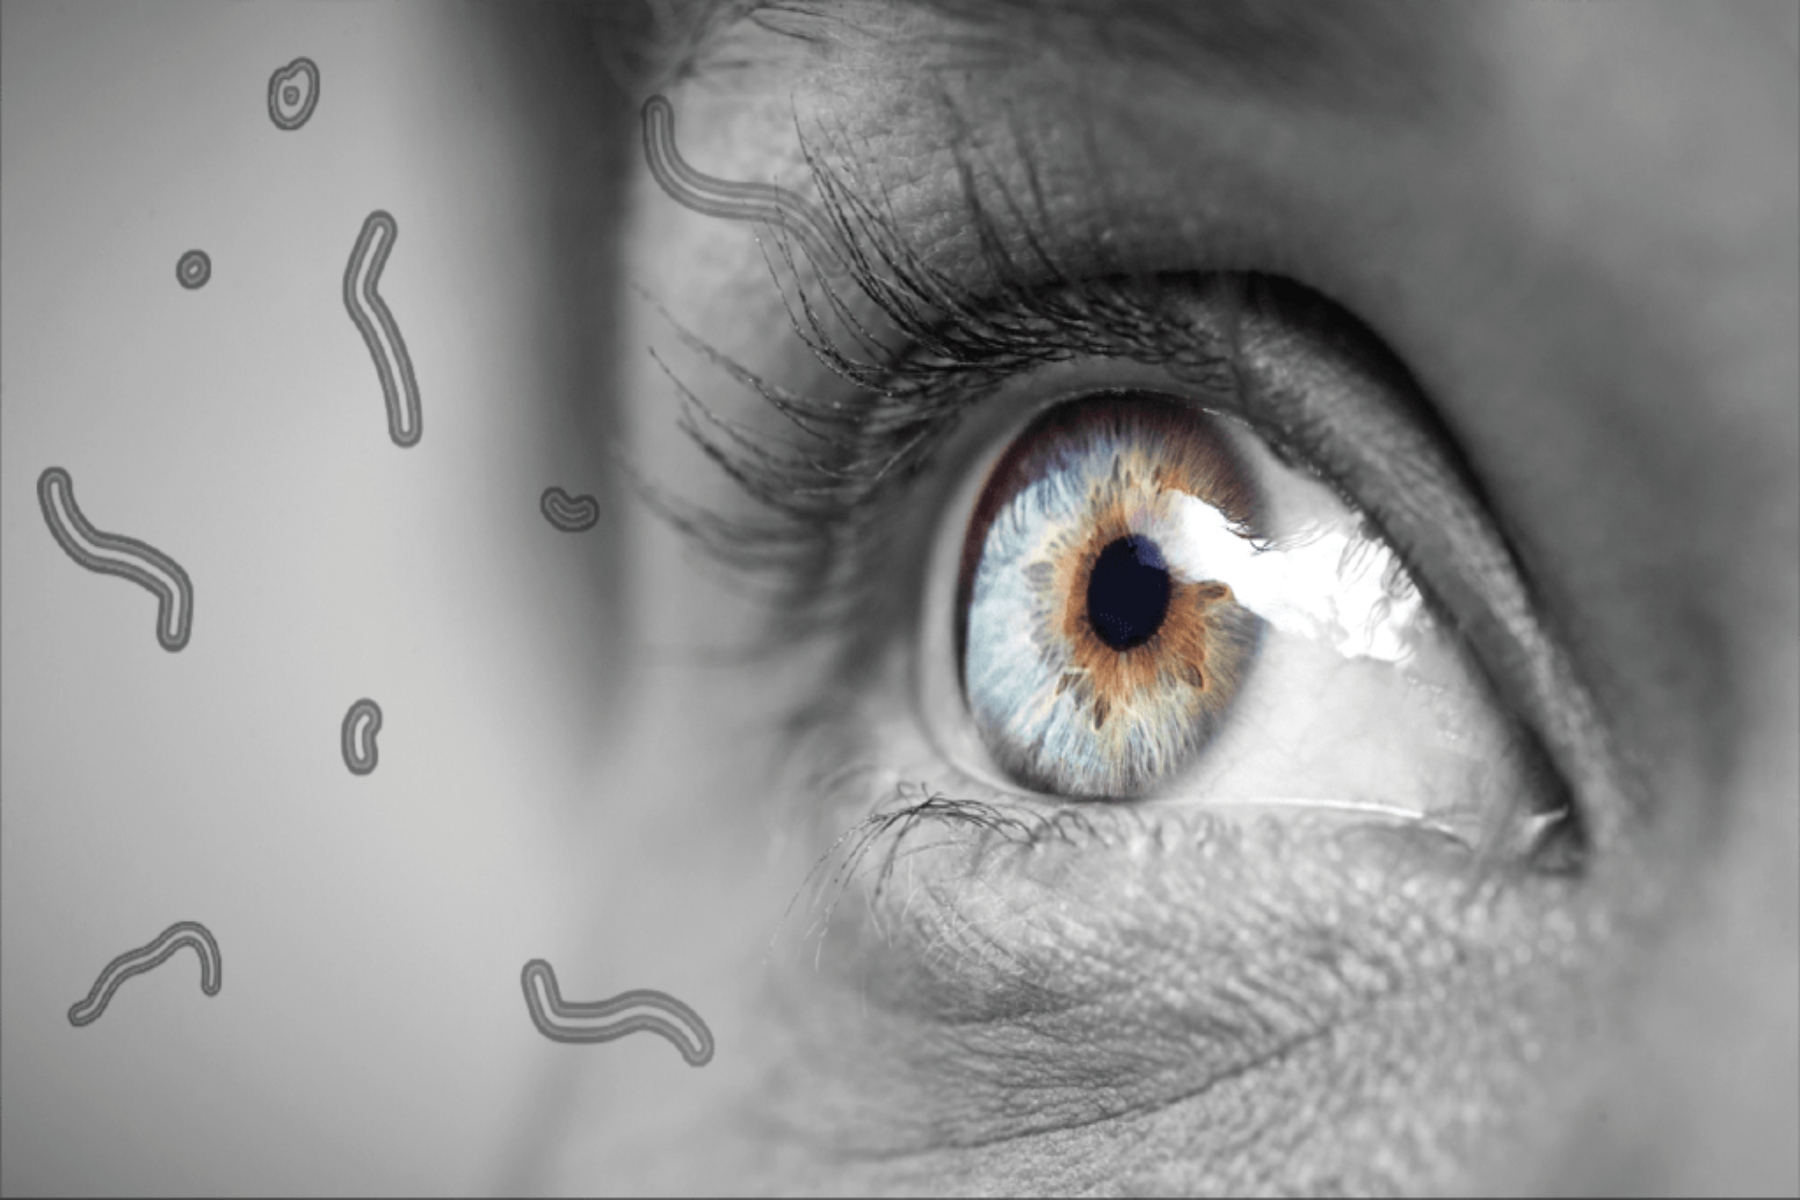 Πλωτήρες στα μάτια: Πώς να αντιμετωπίσετε τους πλωτήρες στα μάτια;